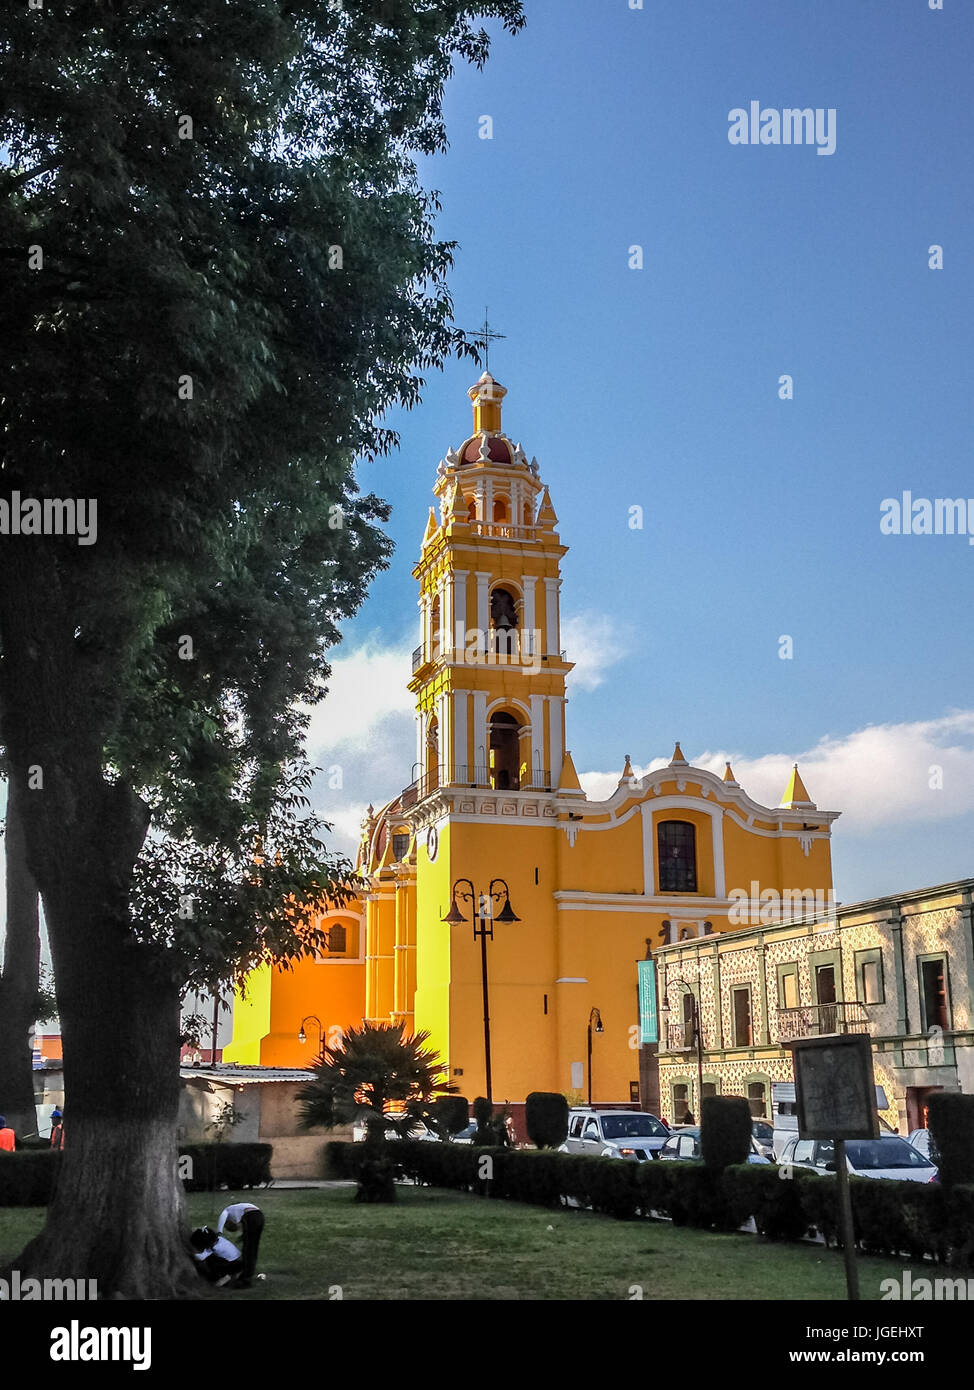 Di colore giallo brillante facciata di San Apostolo chiesa nel Zocalo in Cholula, Messico visto attraverso prati e arbusti contro un cielo blu Foto Stock